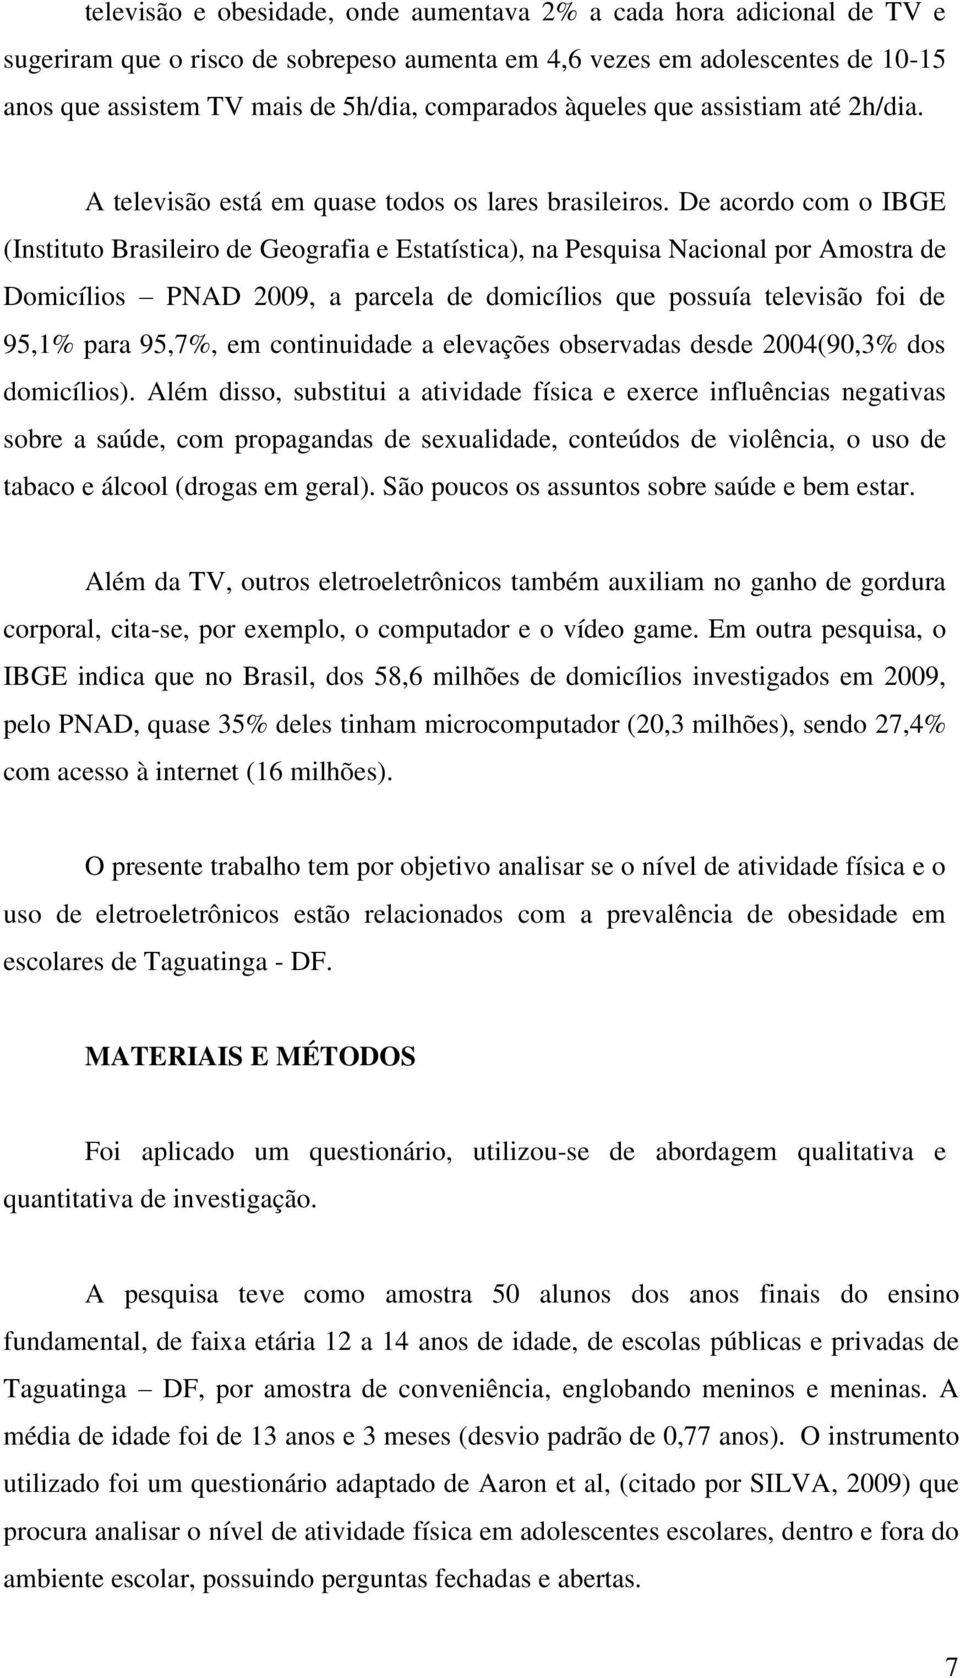 De acordo com o IBGE (Instituto Brasileiro de Geografia e Estatística), na Pesquisa Nacional por Amostra de Domicílios PNAD 2009, a parcela de domicílios que possuía televisão foi de 95,1% para